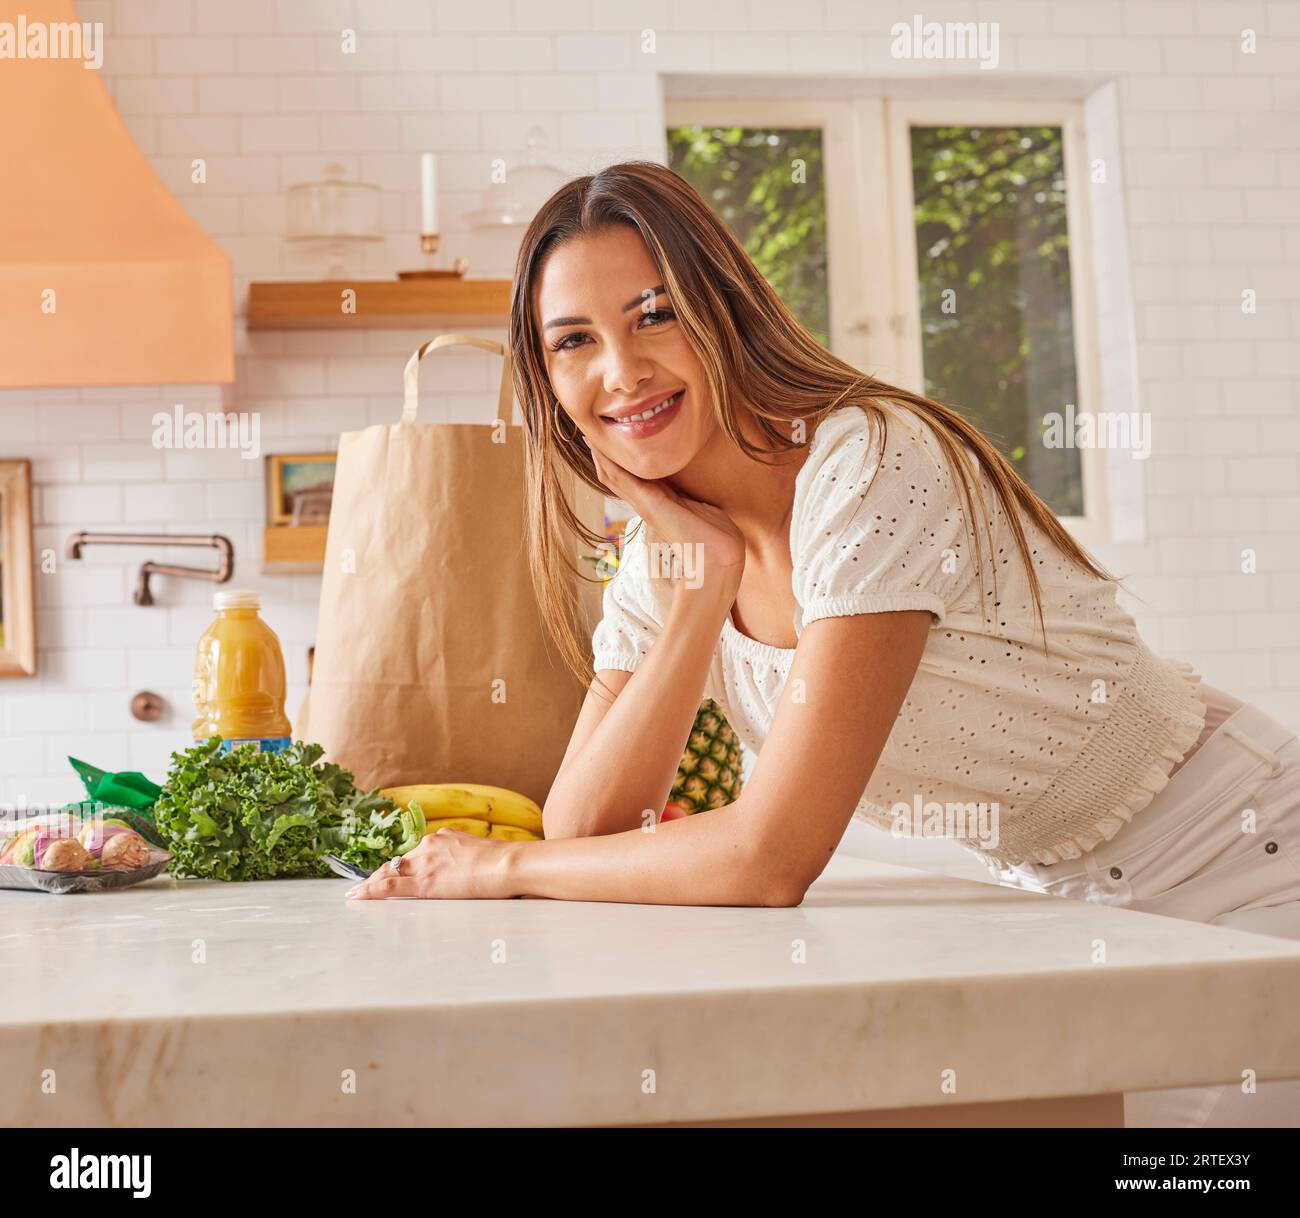 Ritratto di una donna sorridente con sacchetto di carta e alimentari in cucina Foto Stock